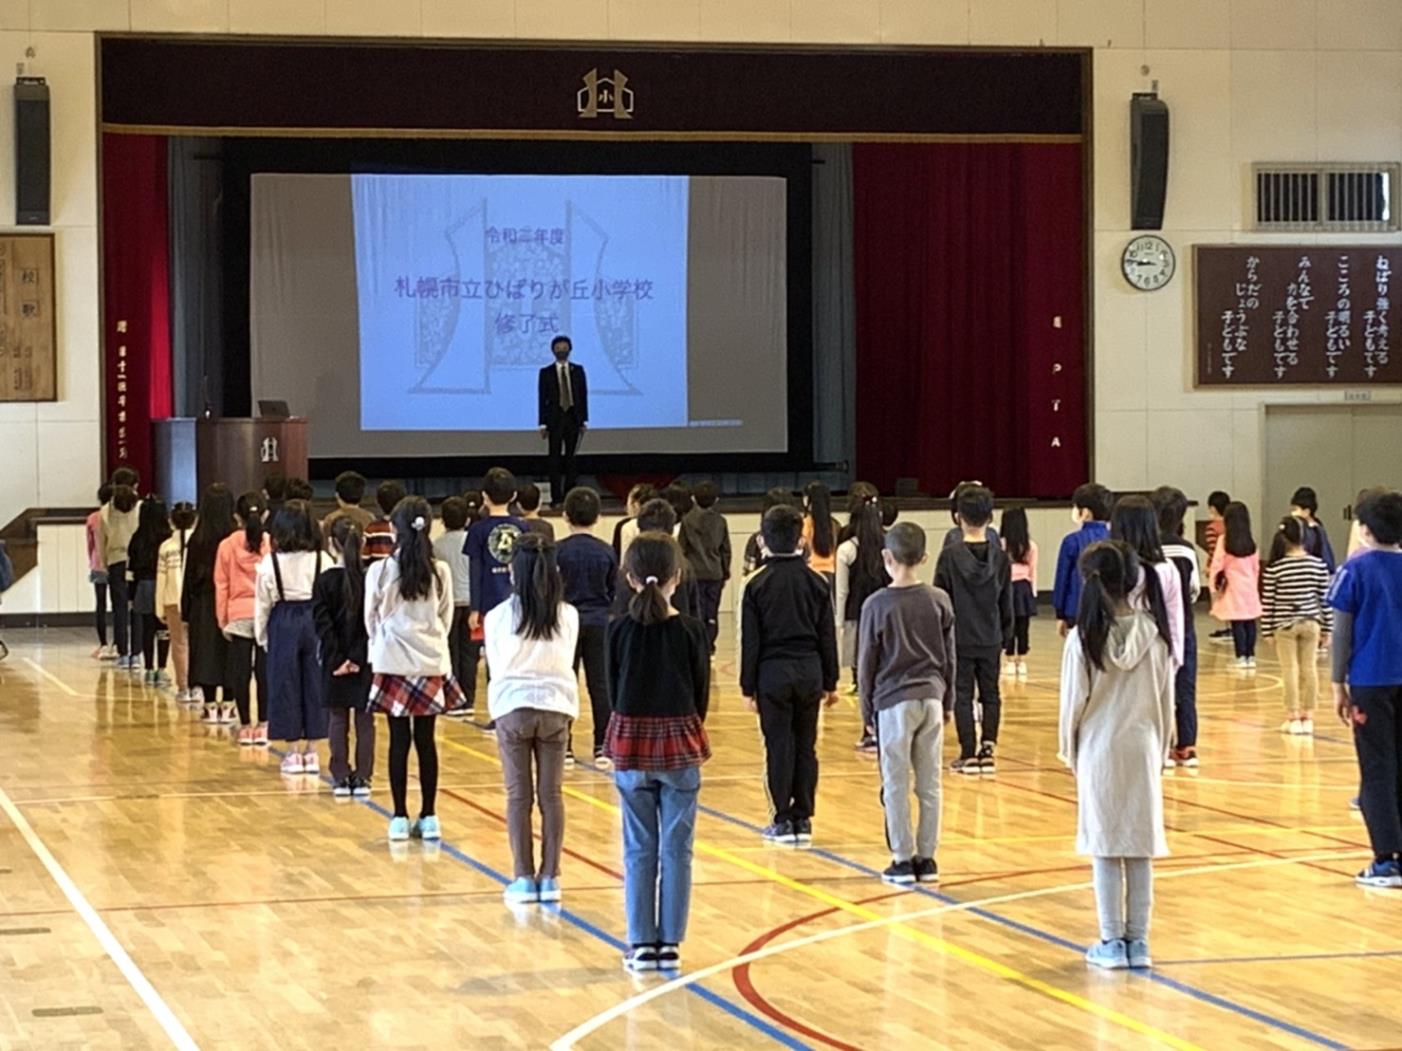 札幌市立小中学校修了式